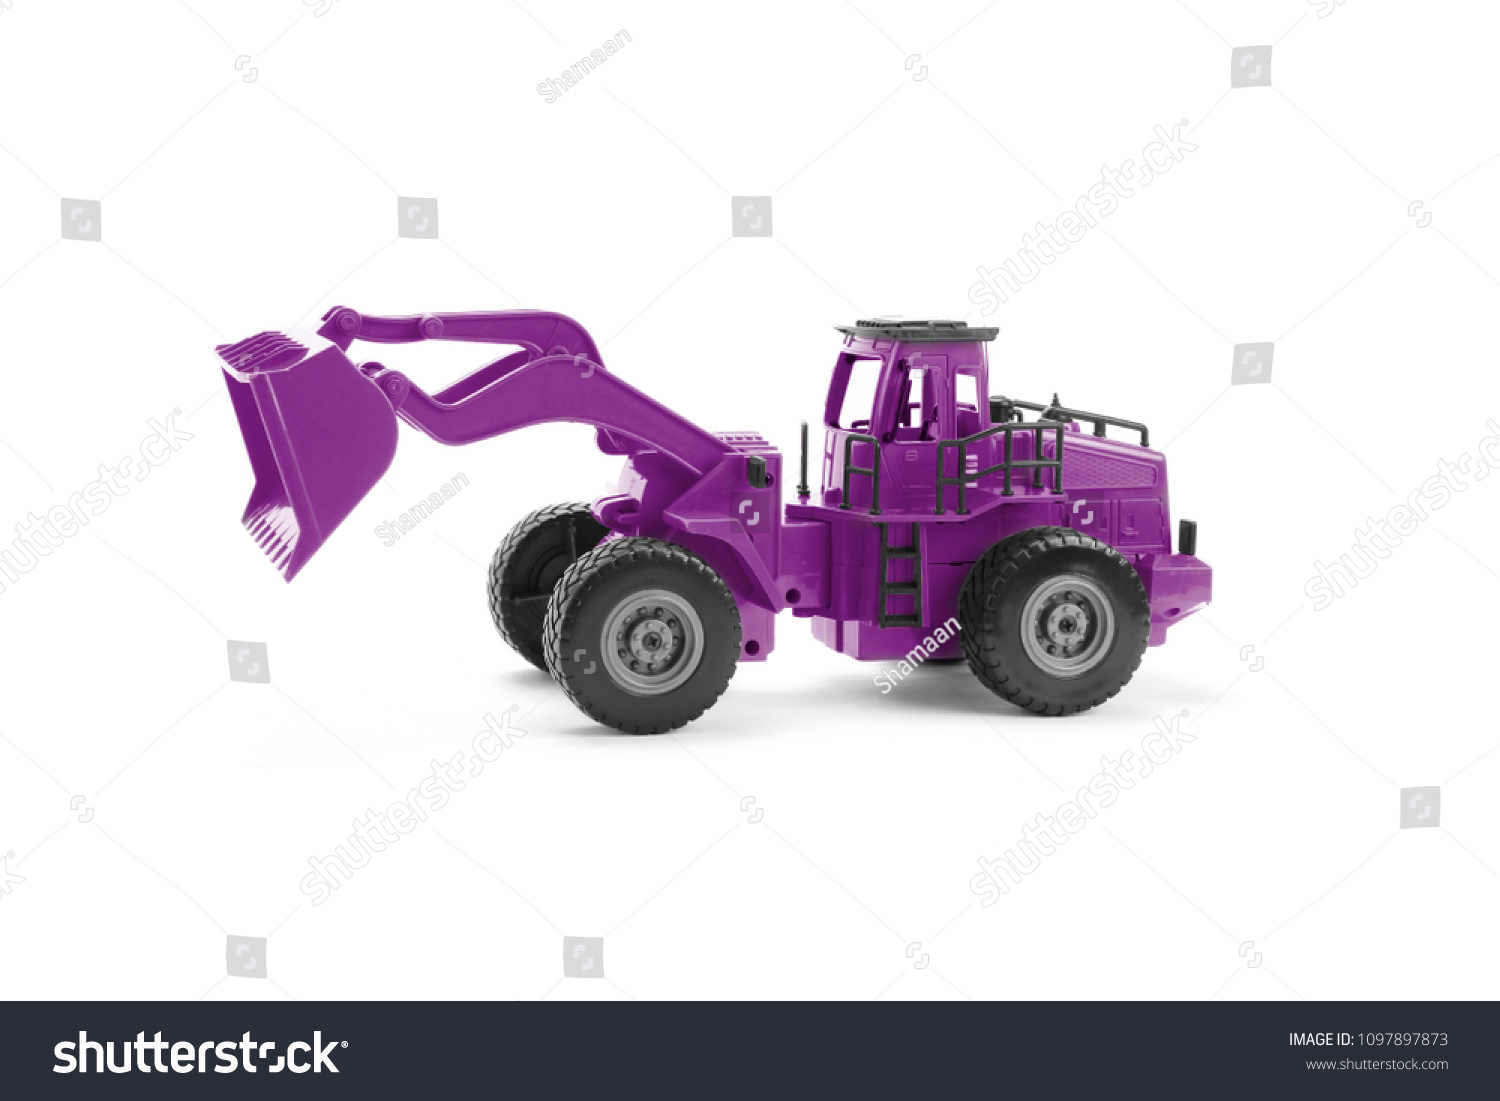 purple excavator toy